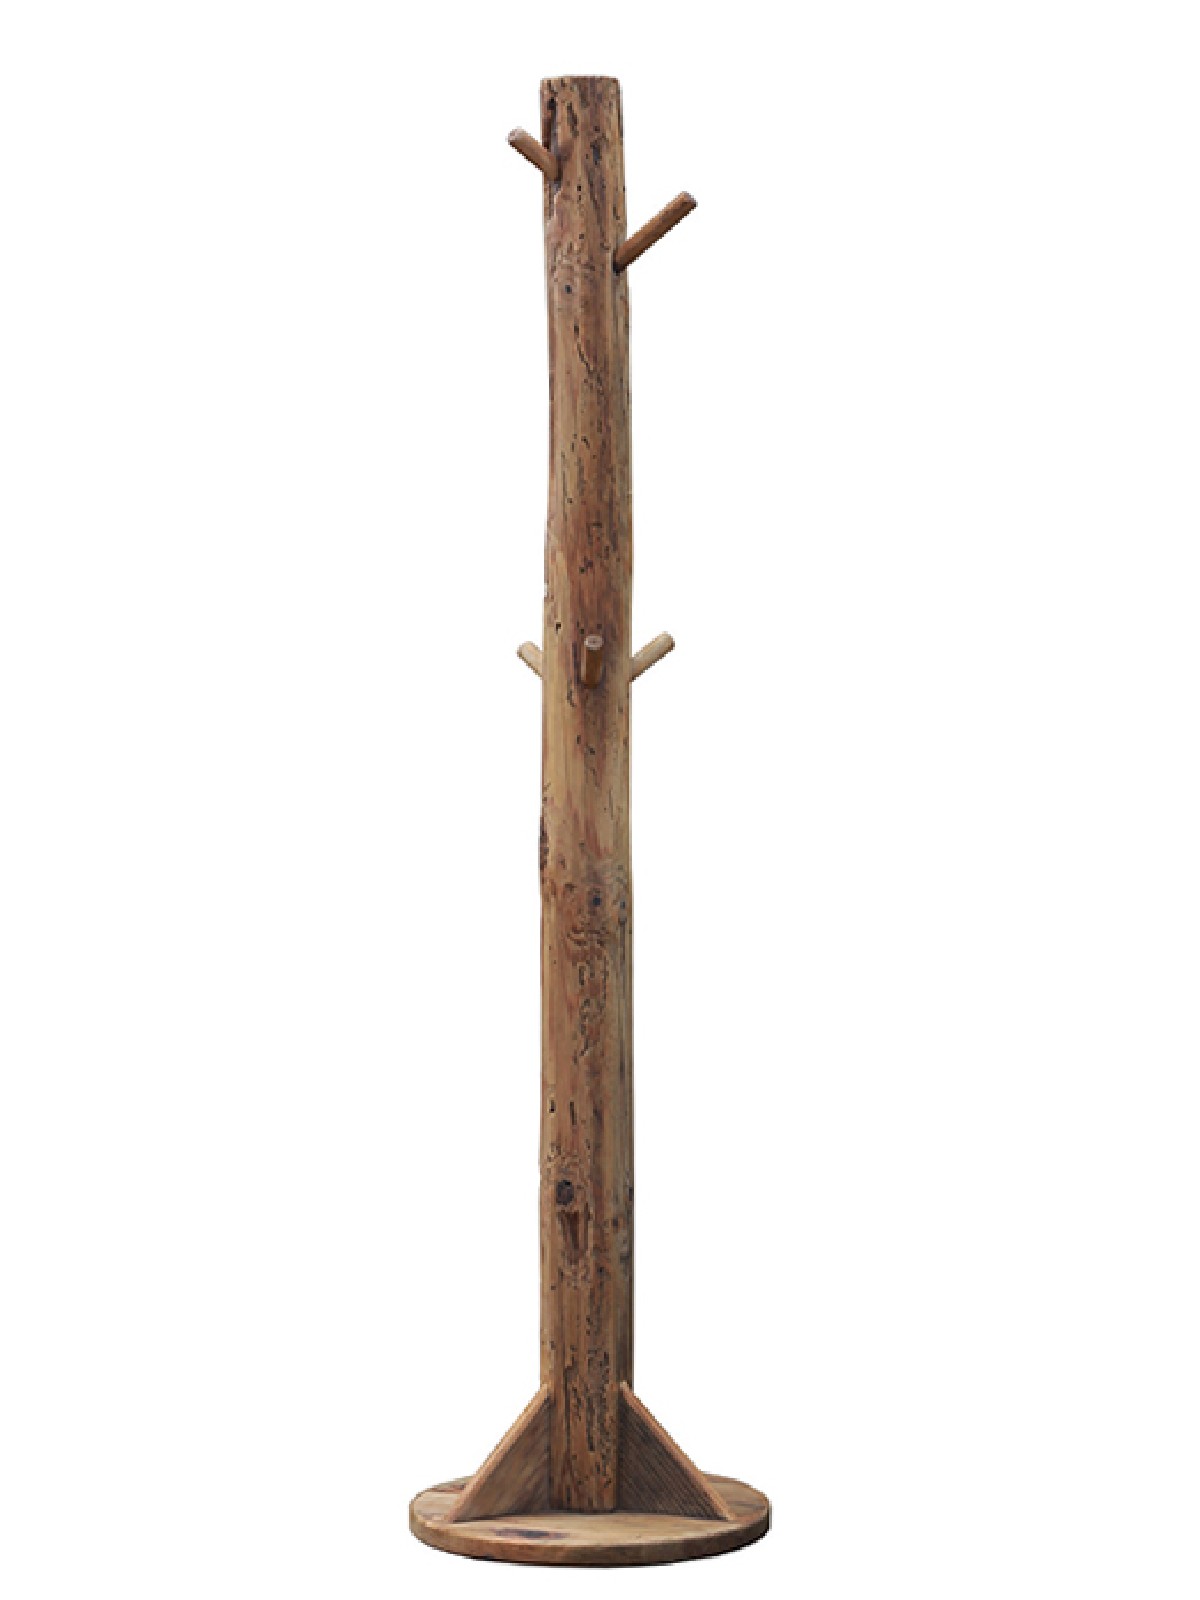 Wooden coat hanger stand